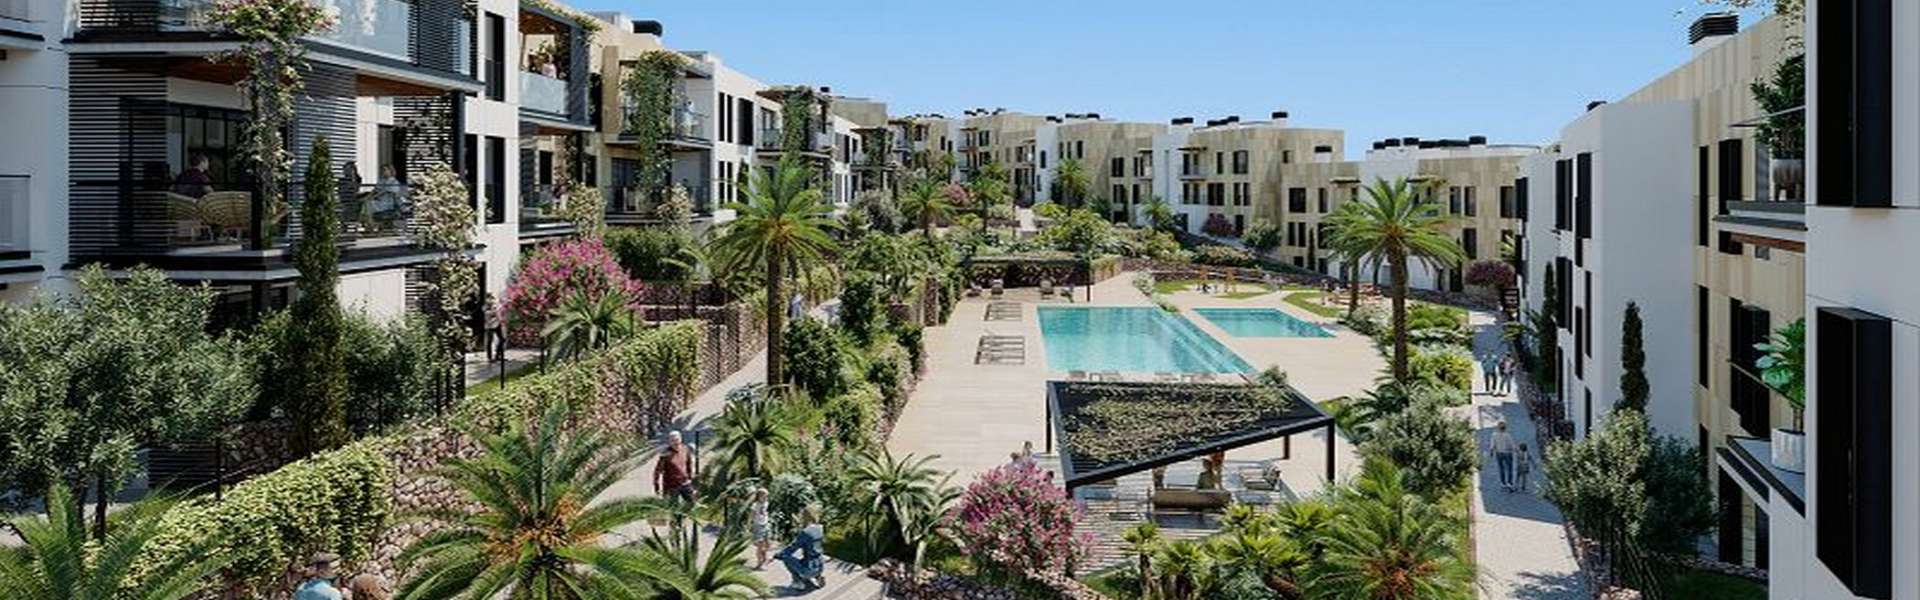 Palma/Golfplatz Son Quint – Moderne Apartments/Penthäuser in schöner Lage